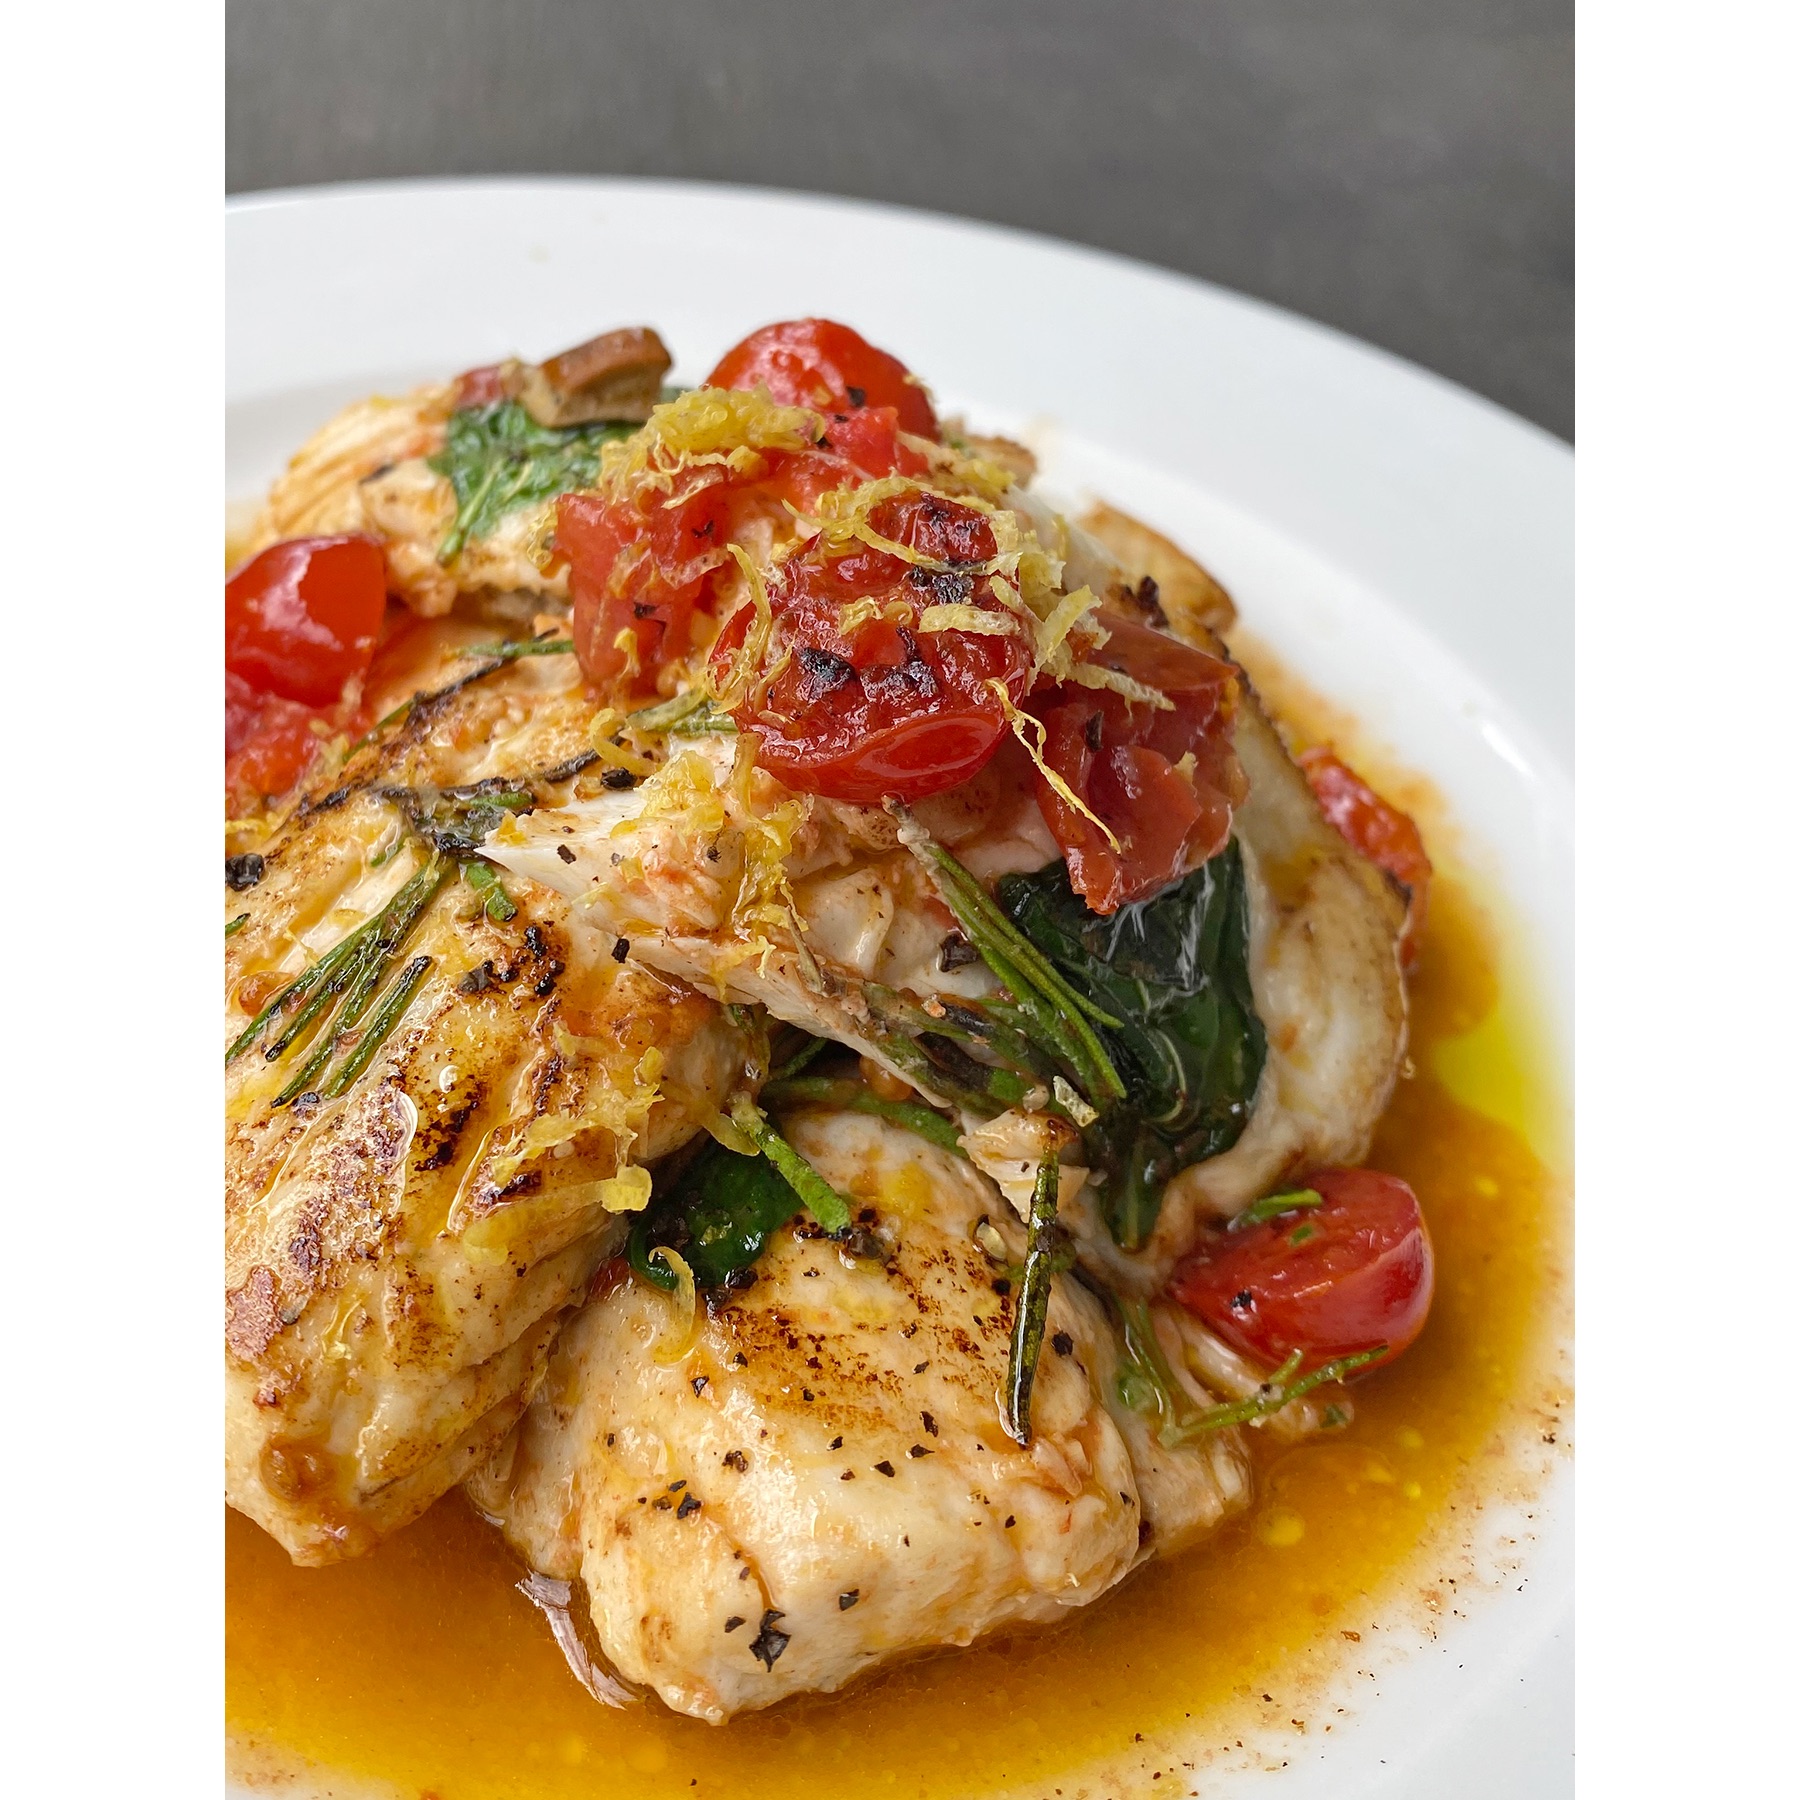 Branzino con datterini e limone: la semplicità di una ricetta casalinga dello chef Simone Rugiati  con tutta la qualità del pesce greco firmato “Fish from Greece”